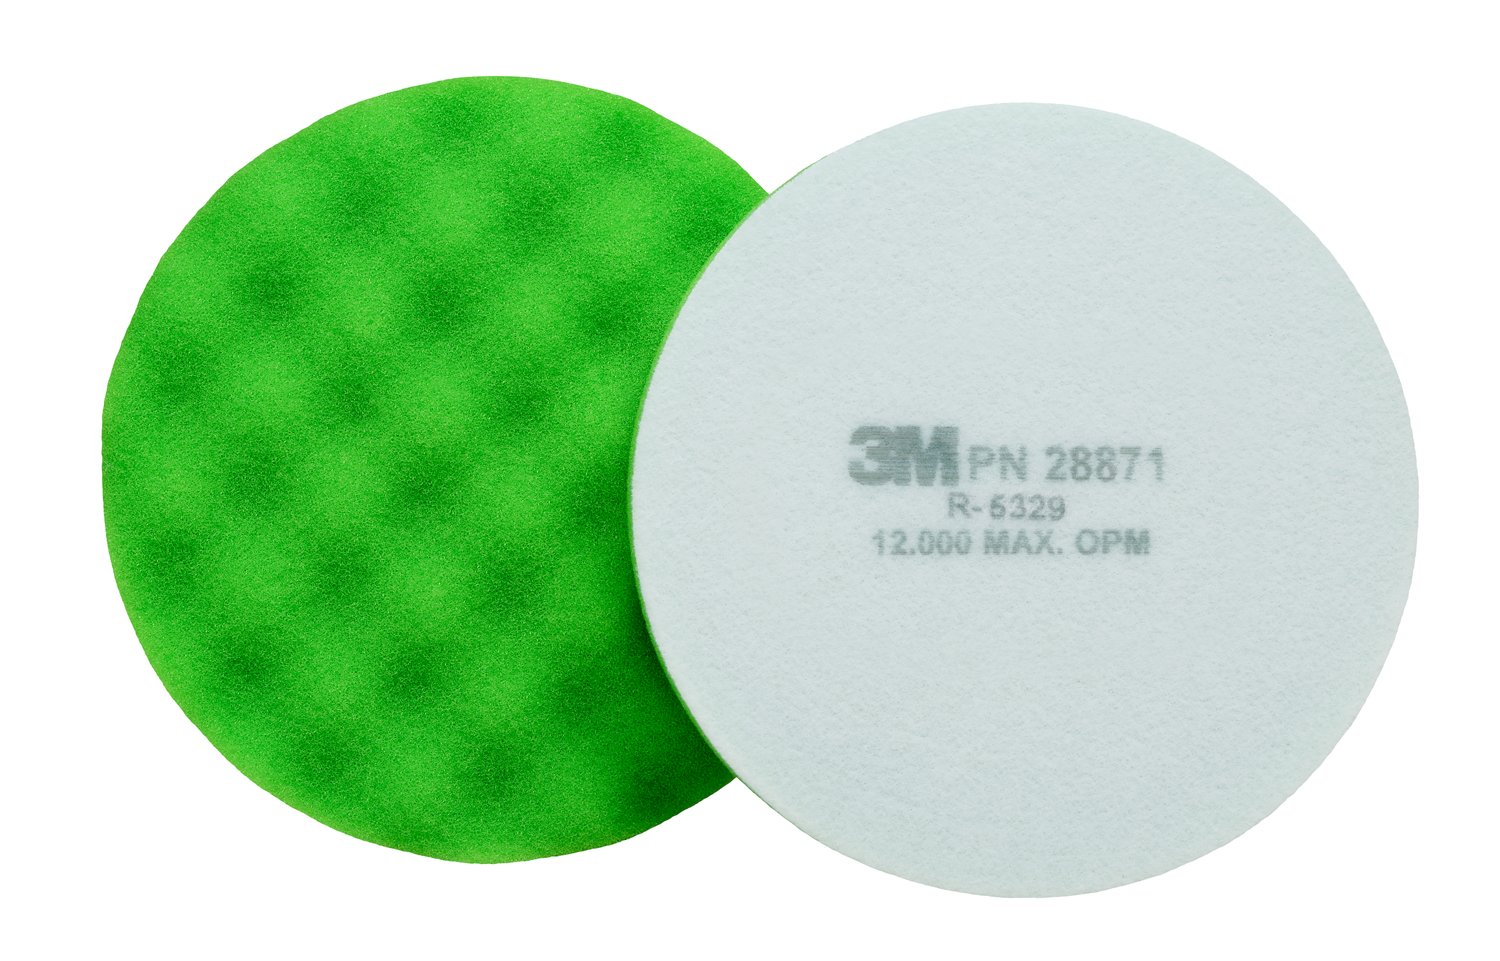 7100082542 - 3M Finesse-it Advanced Foam Buffing Pad, 28871, 5-1/4 in, Green,
10/Bag, 50 ea/Case